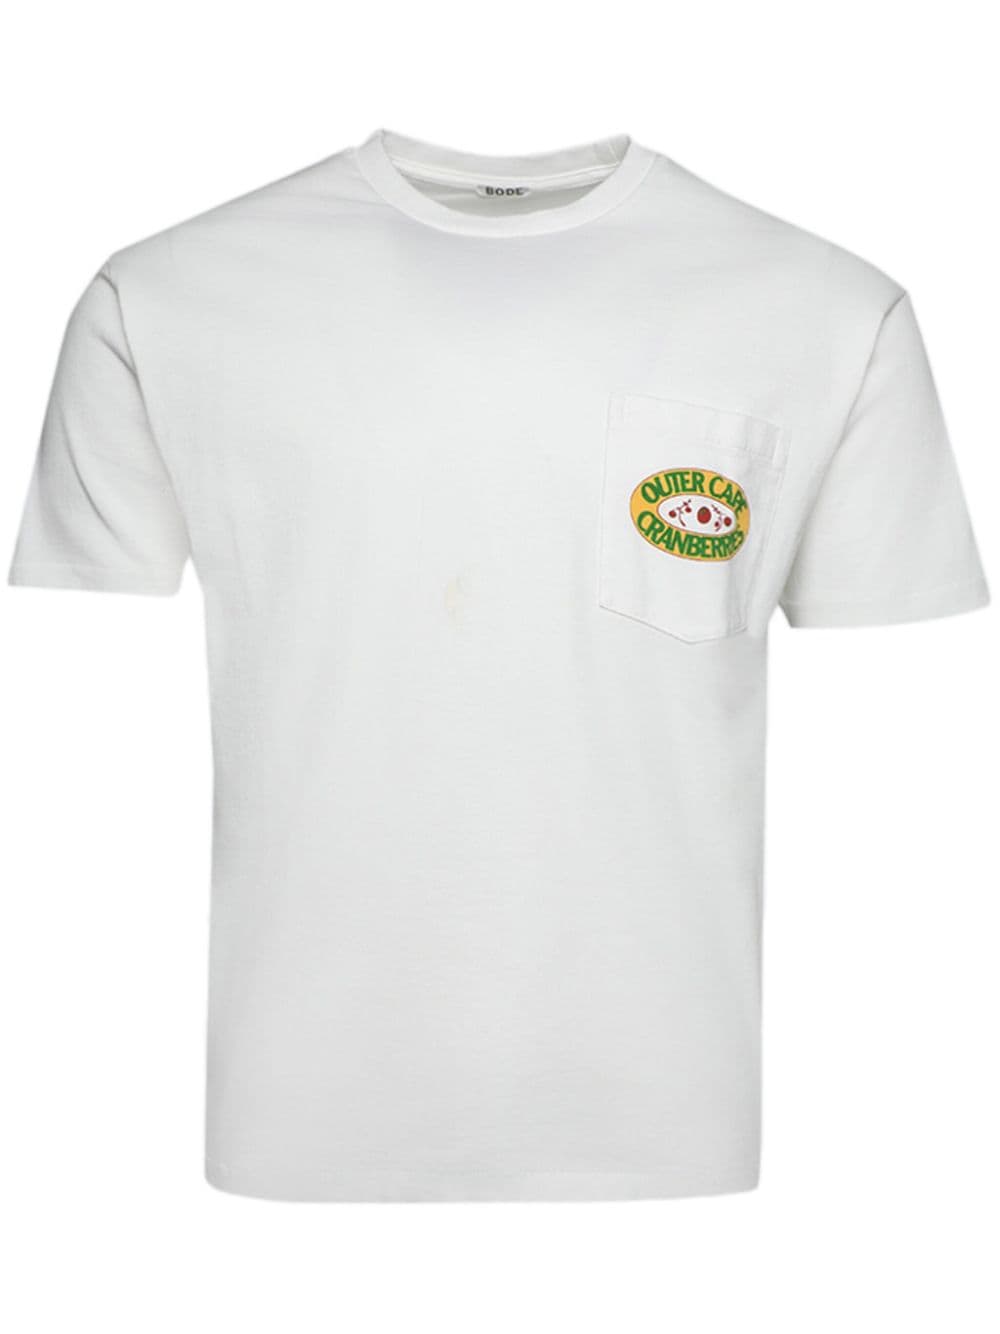 Cranberries Pocket cotton T-shirt